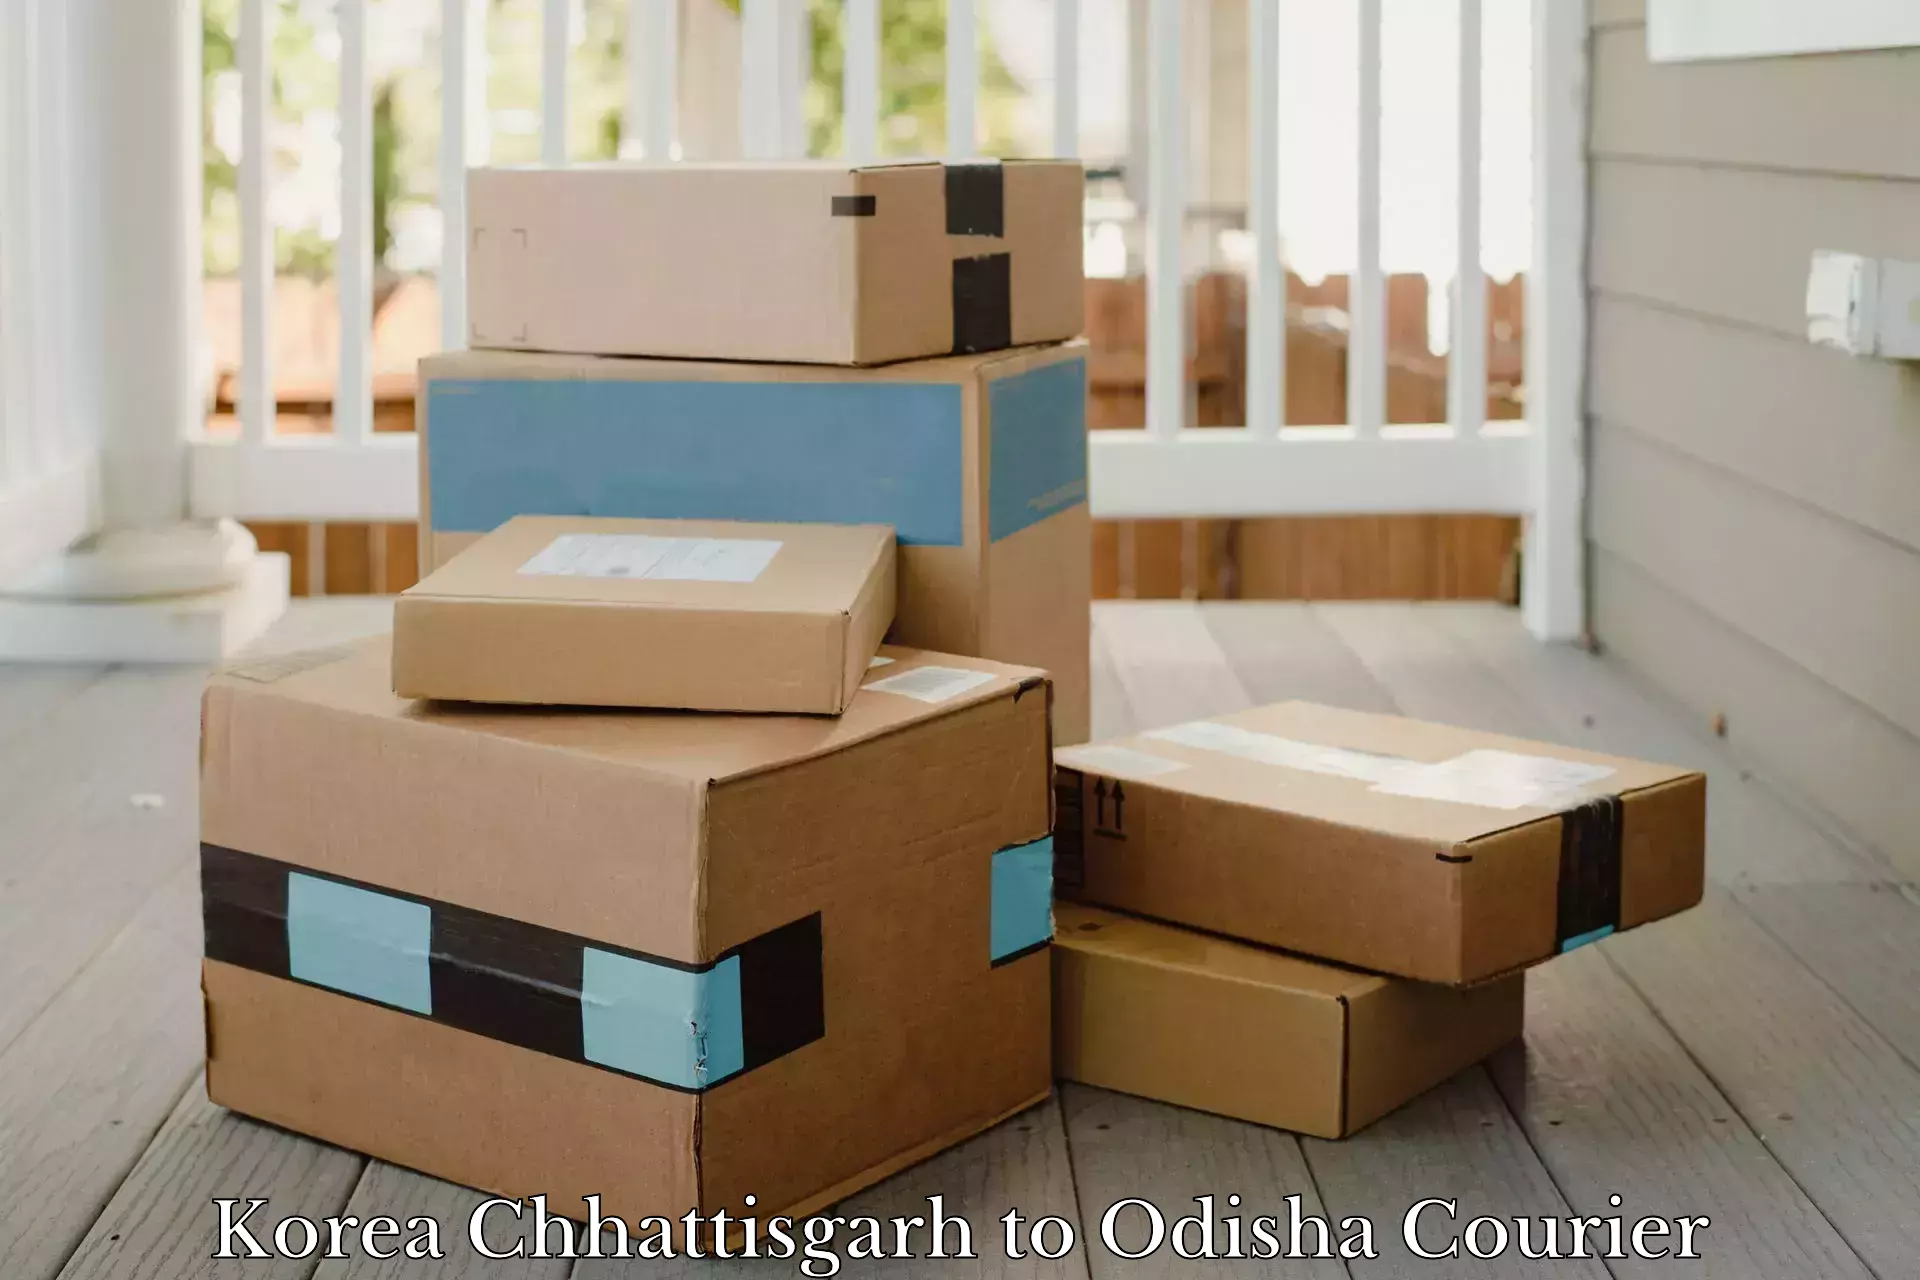 Corporate courier solutions Korea Chhattisgarh to Jeypore